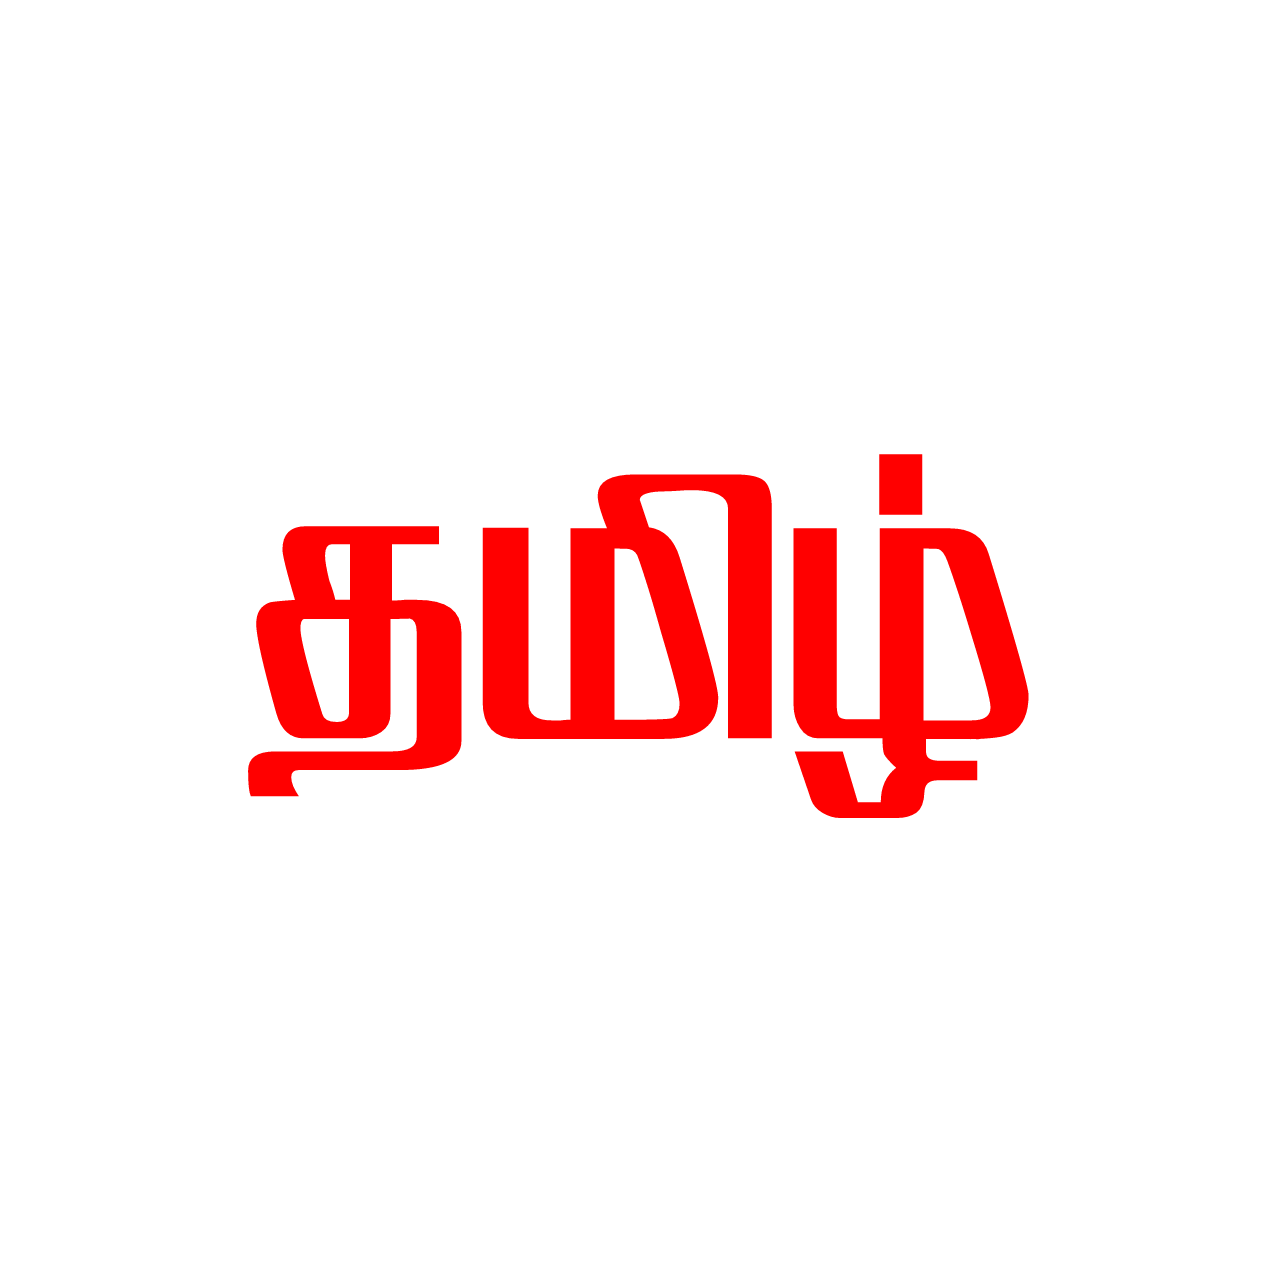 Vanavil valluvar tamil font free download install